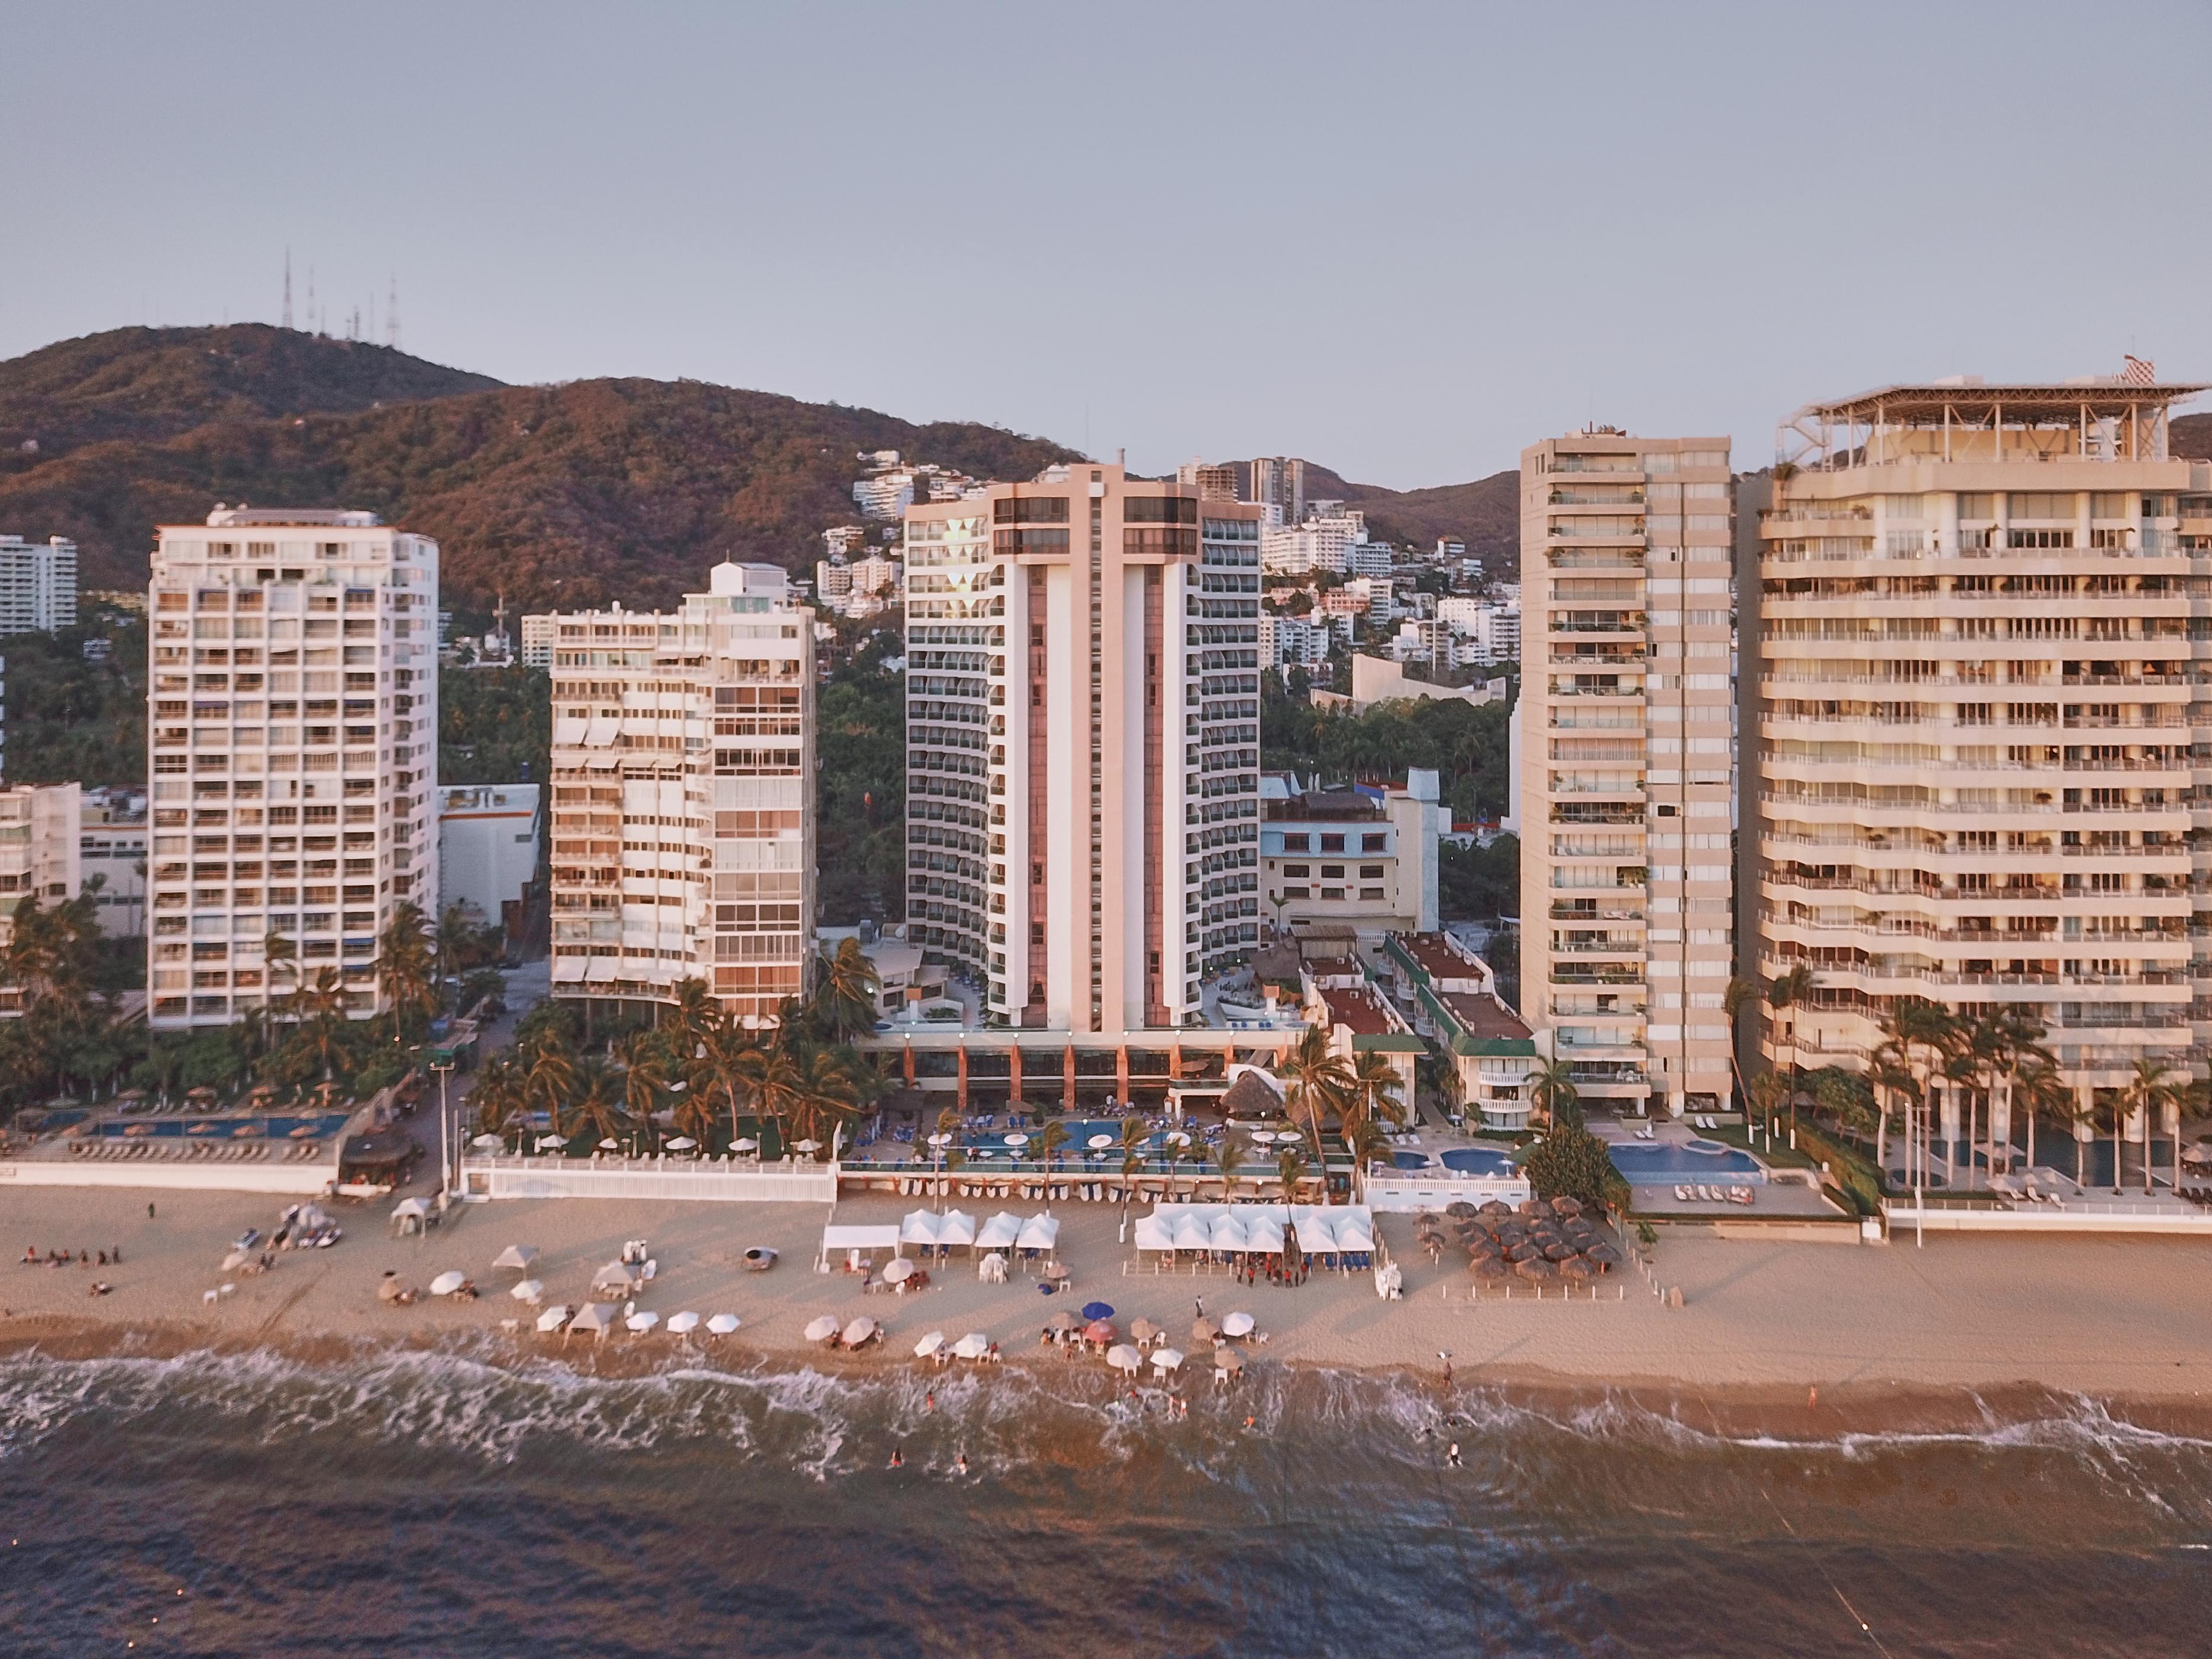 Отель Gamma Acapulco Copacabana Экстерьер фото